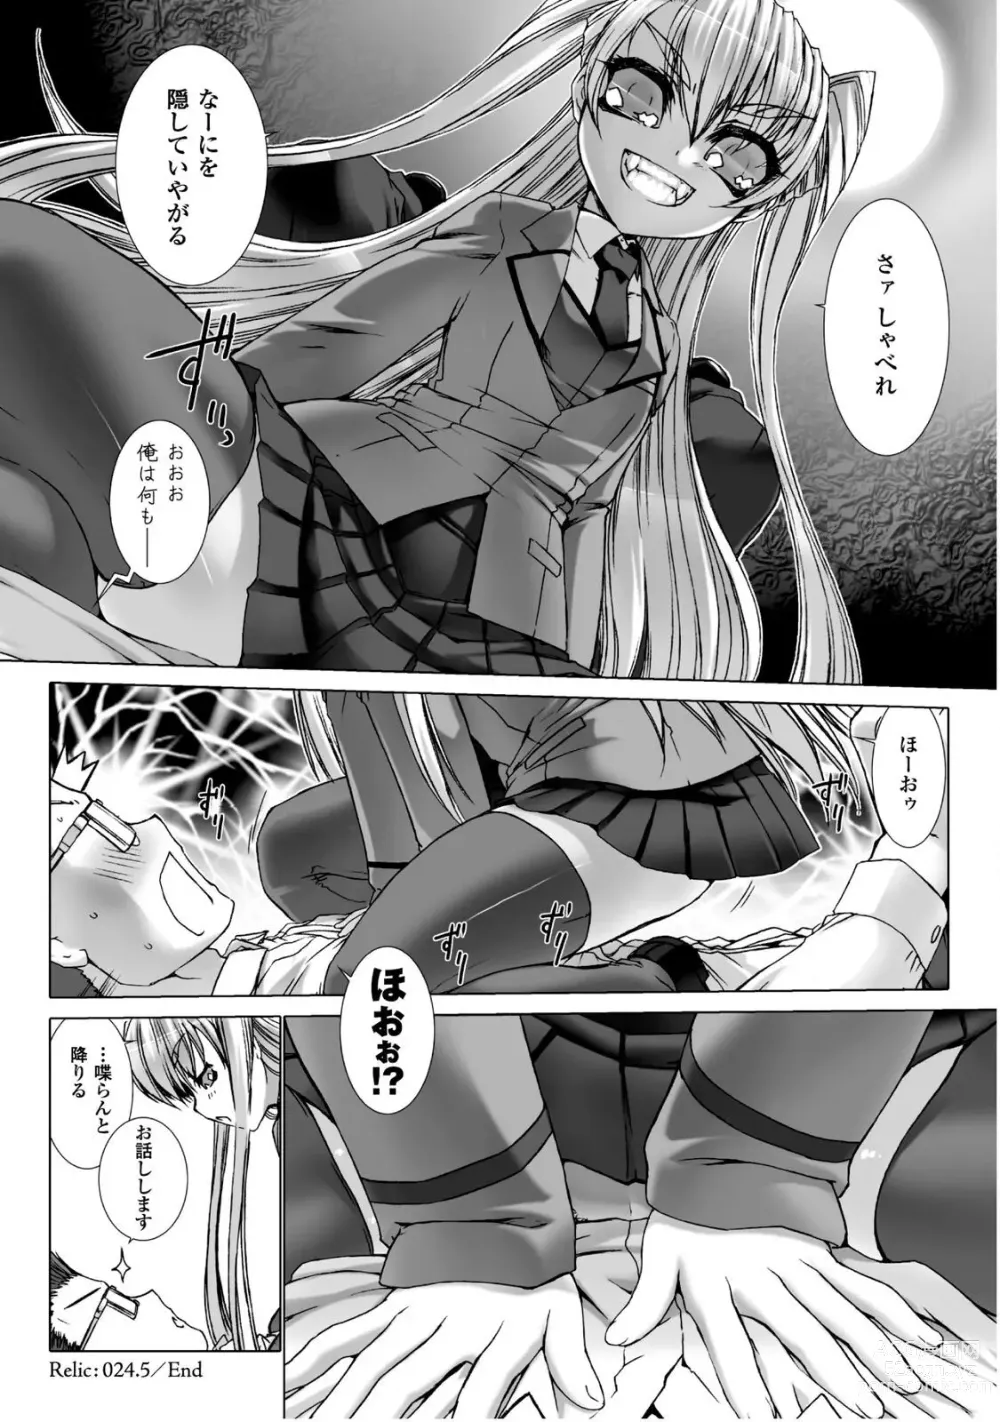 Page 7 of manga Ziggurat 5